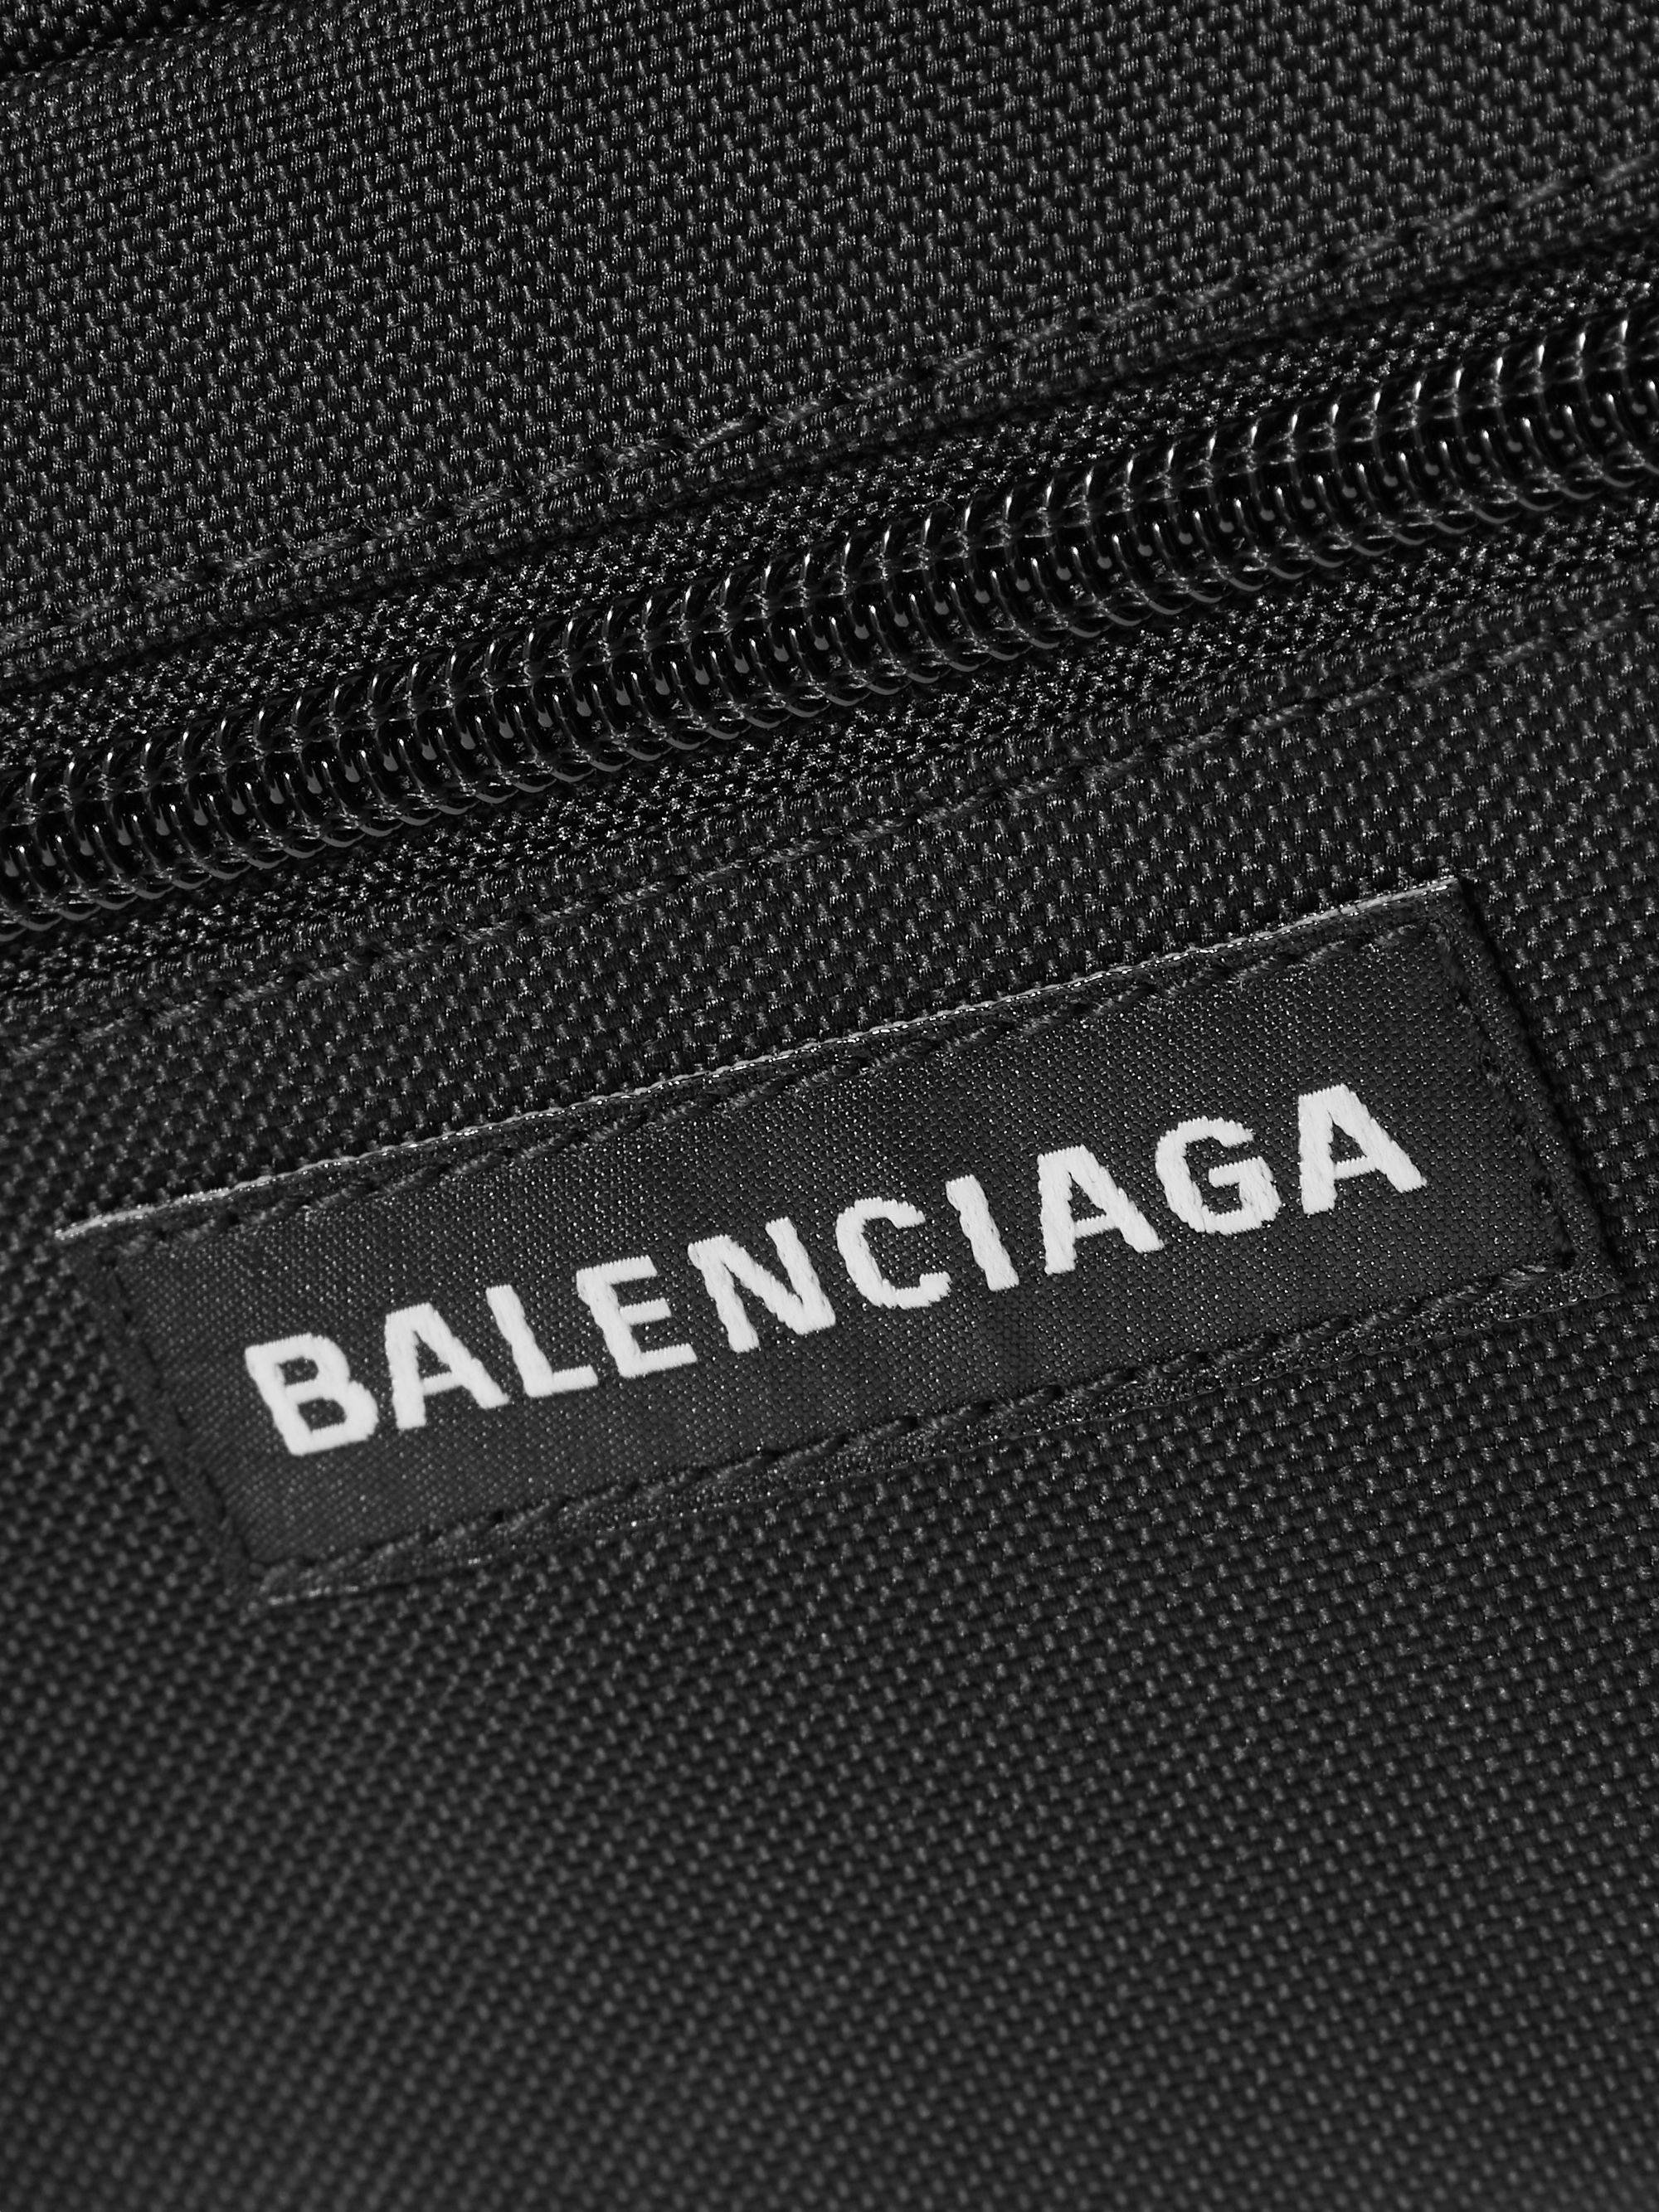 Downloaden Balenciaga Taschenlogo| Wallpapers.com